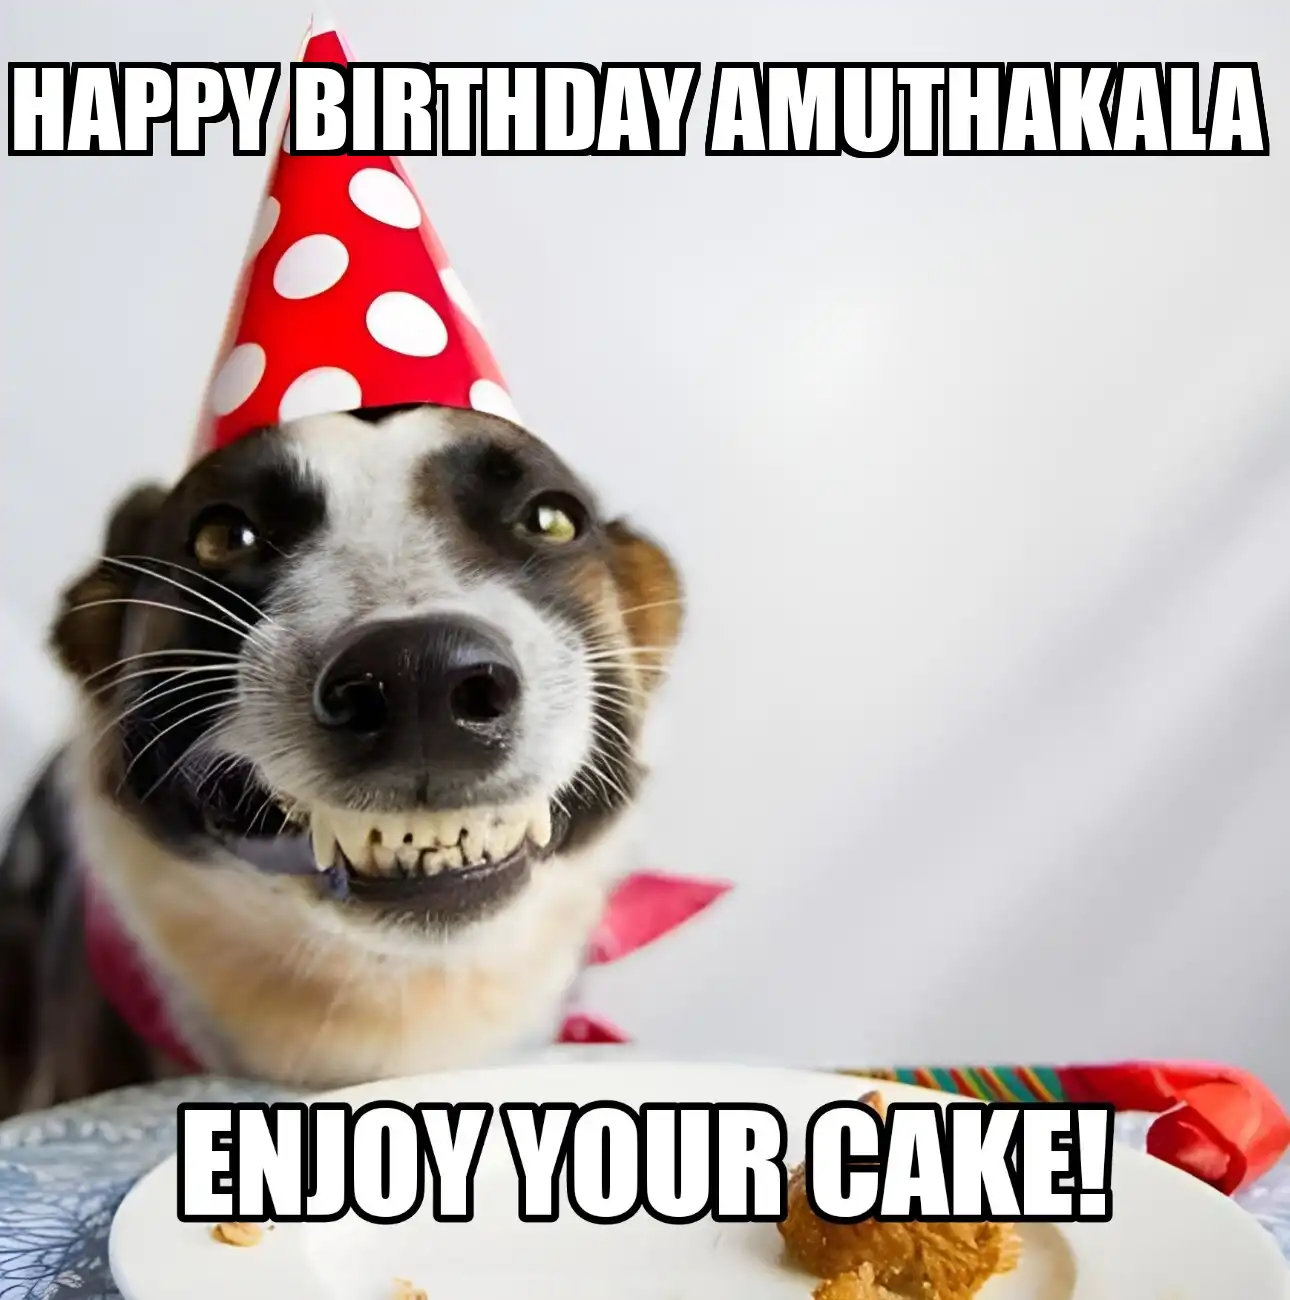 Happy Birthday Amuthakala Enjoy Your Cake Dog Meme